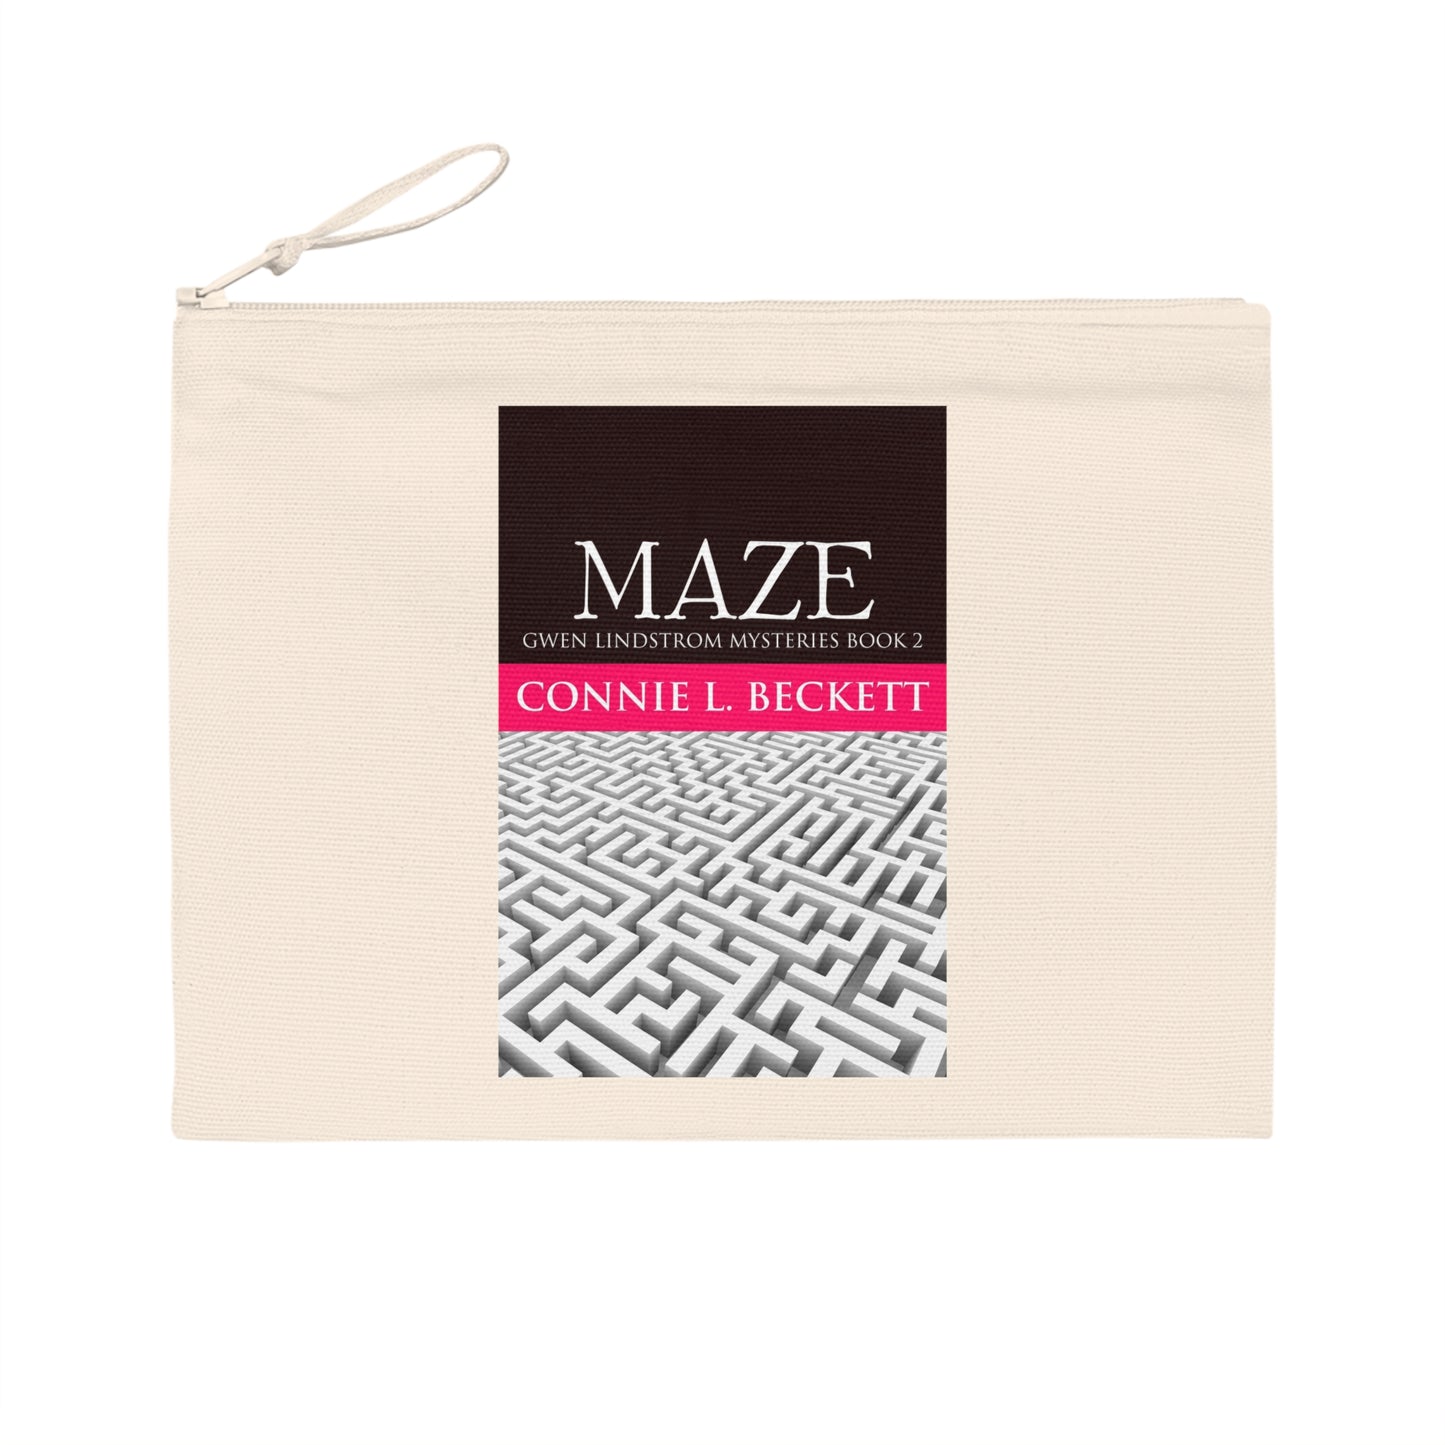 MAZE - Pencil Case